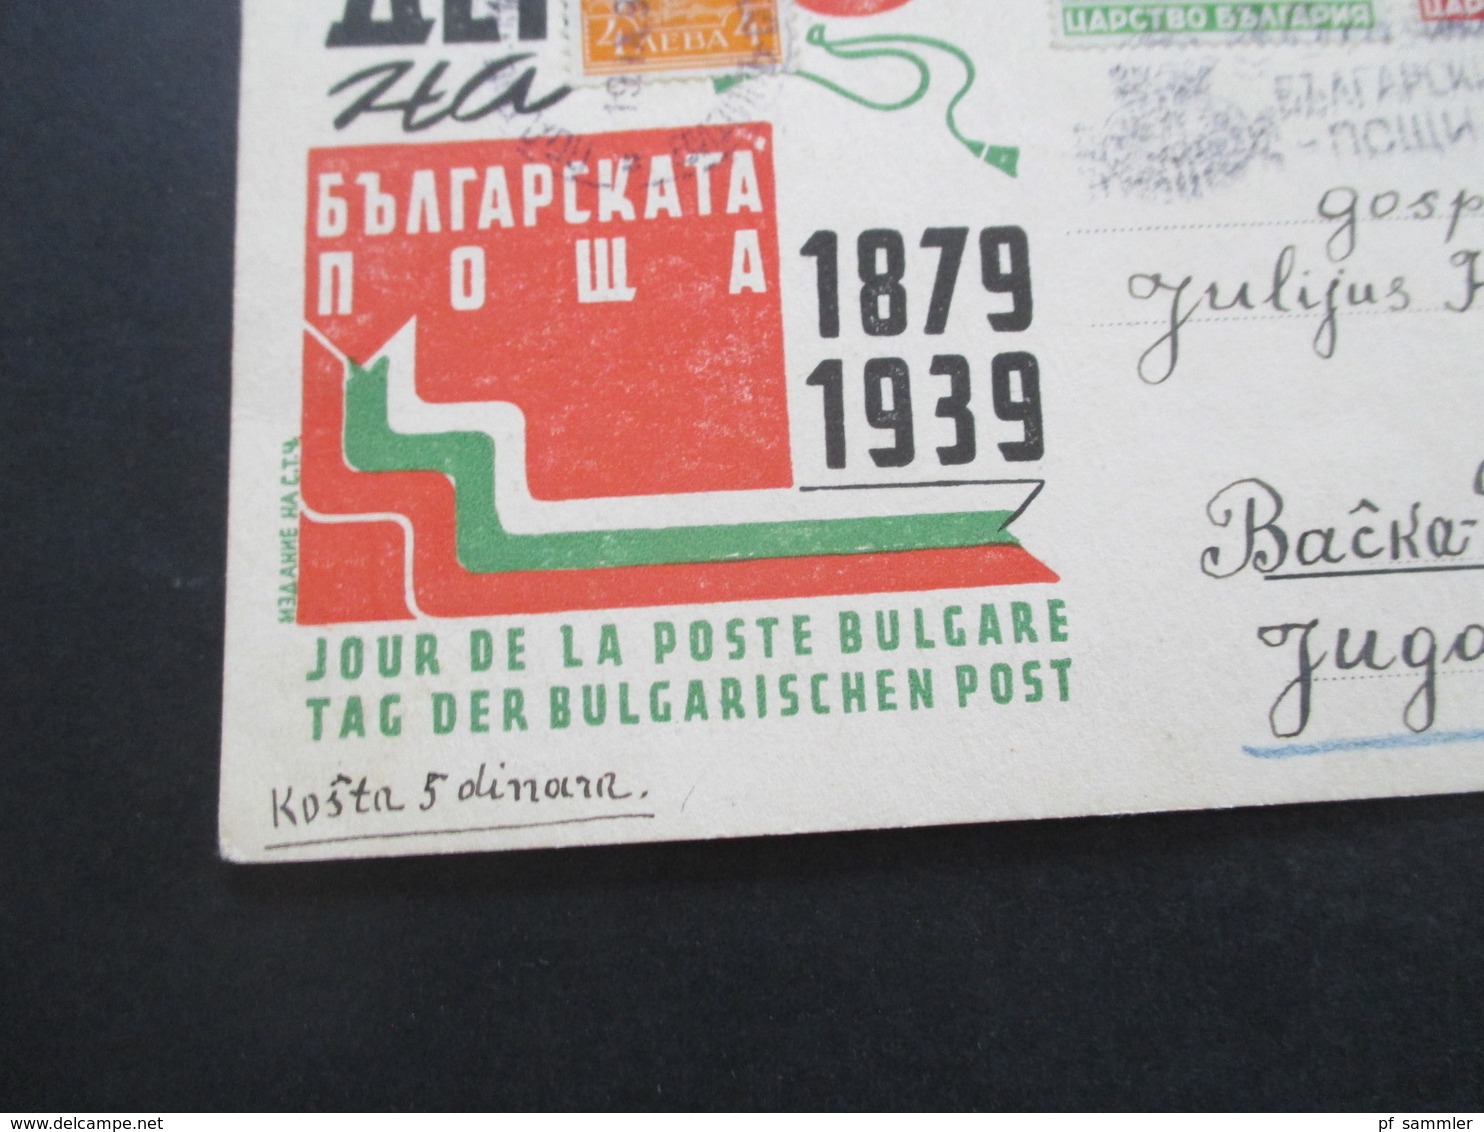 Bulgarien 1939 Sonderpsotkarte Tag Der Bulgarischen Post 1879 - 1939 Nach Backa Palanka Jugoslawien Gesendet - Cartas & Documentos